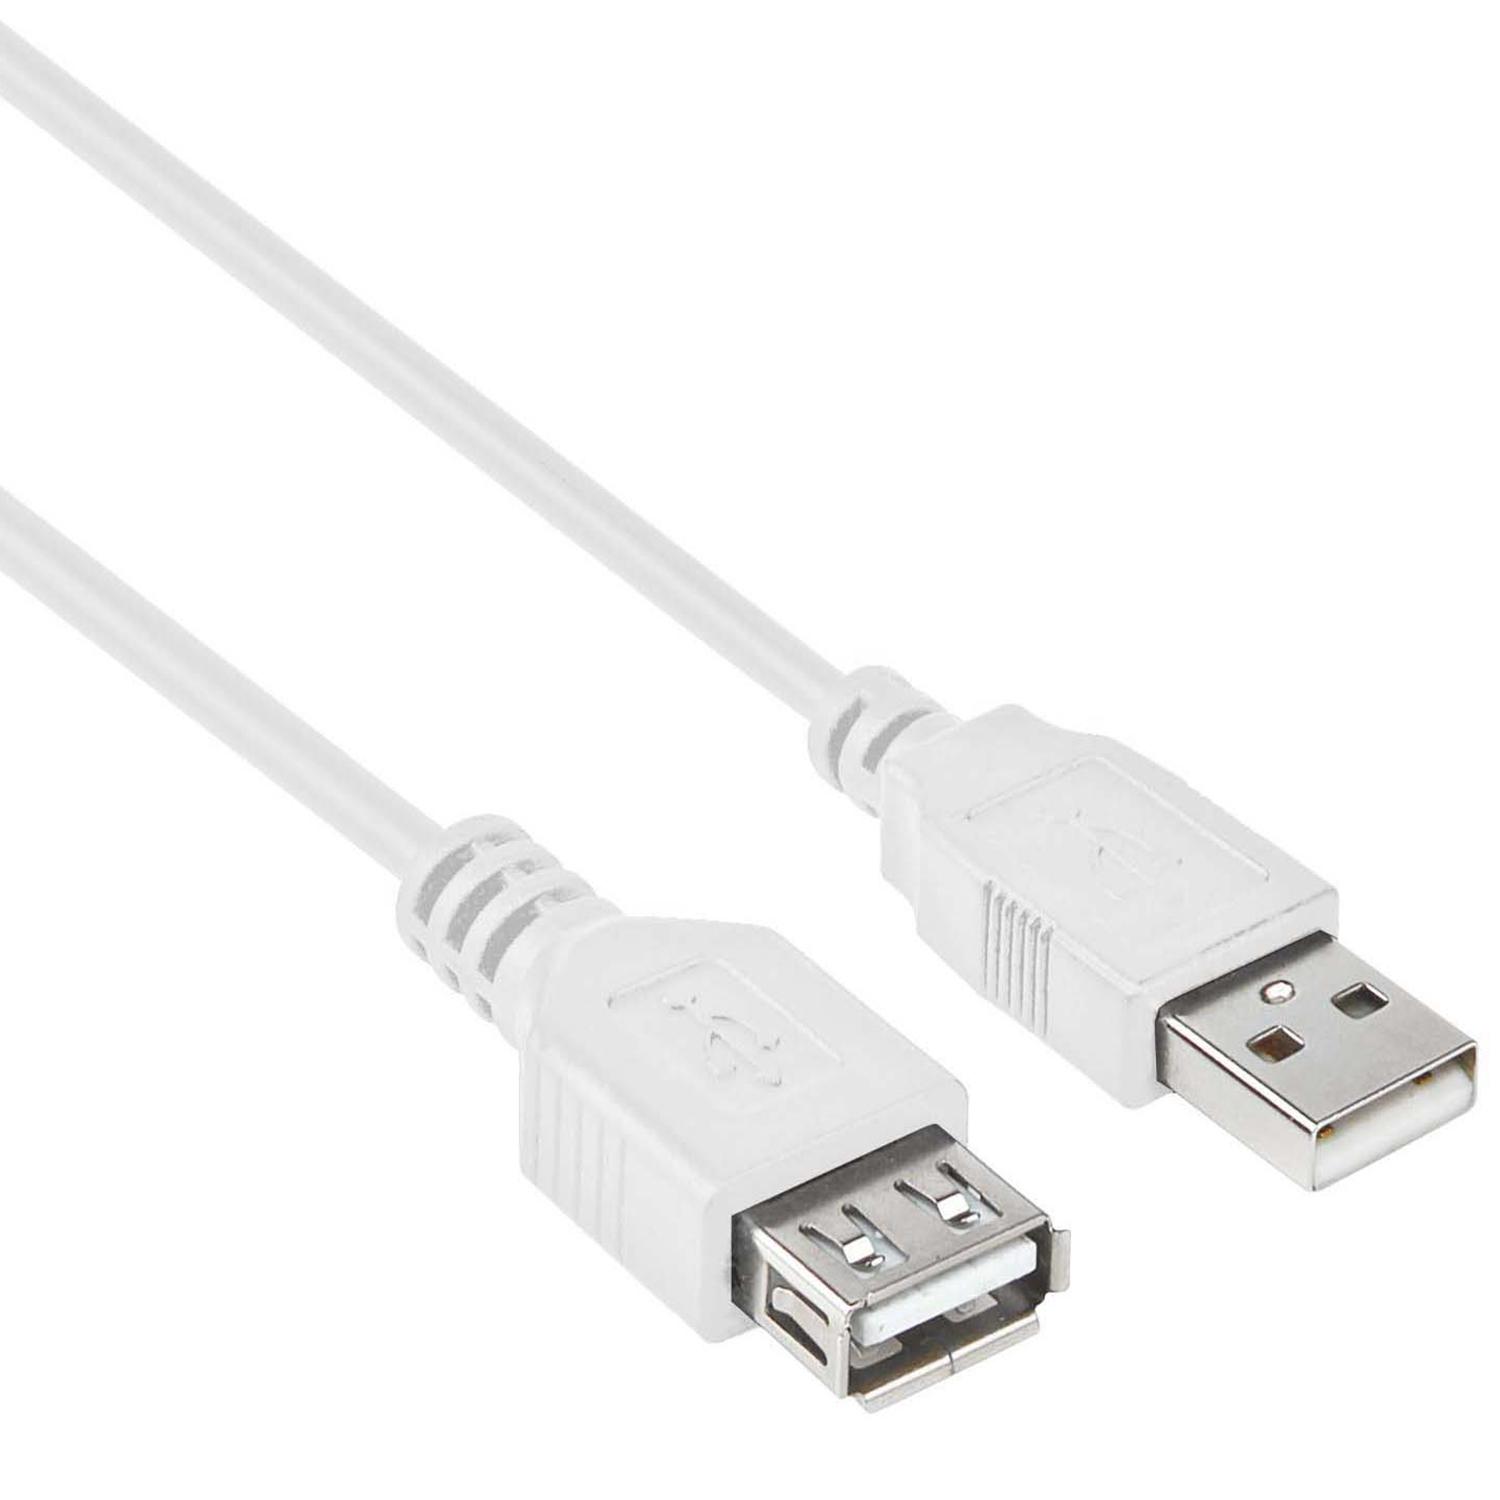 USB 2.0 Verlengkabel - USB 2.0 verlengkabel, Connector 1: USB A male, 2: USB A female, 3 meter.